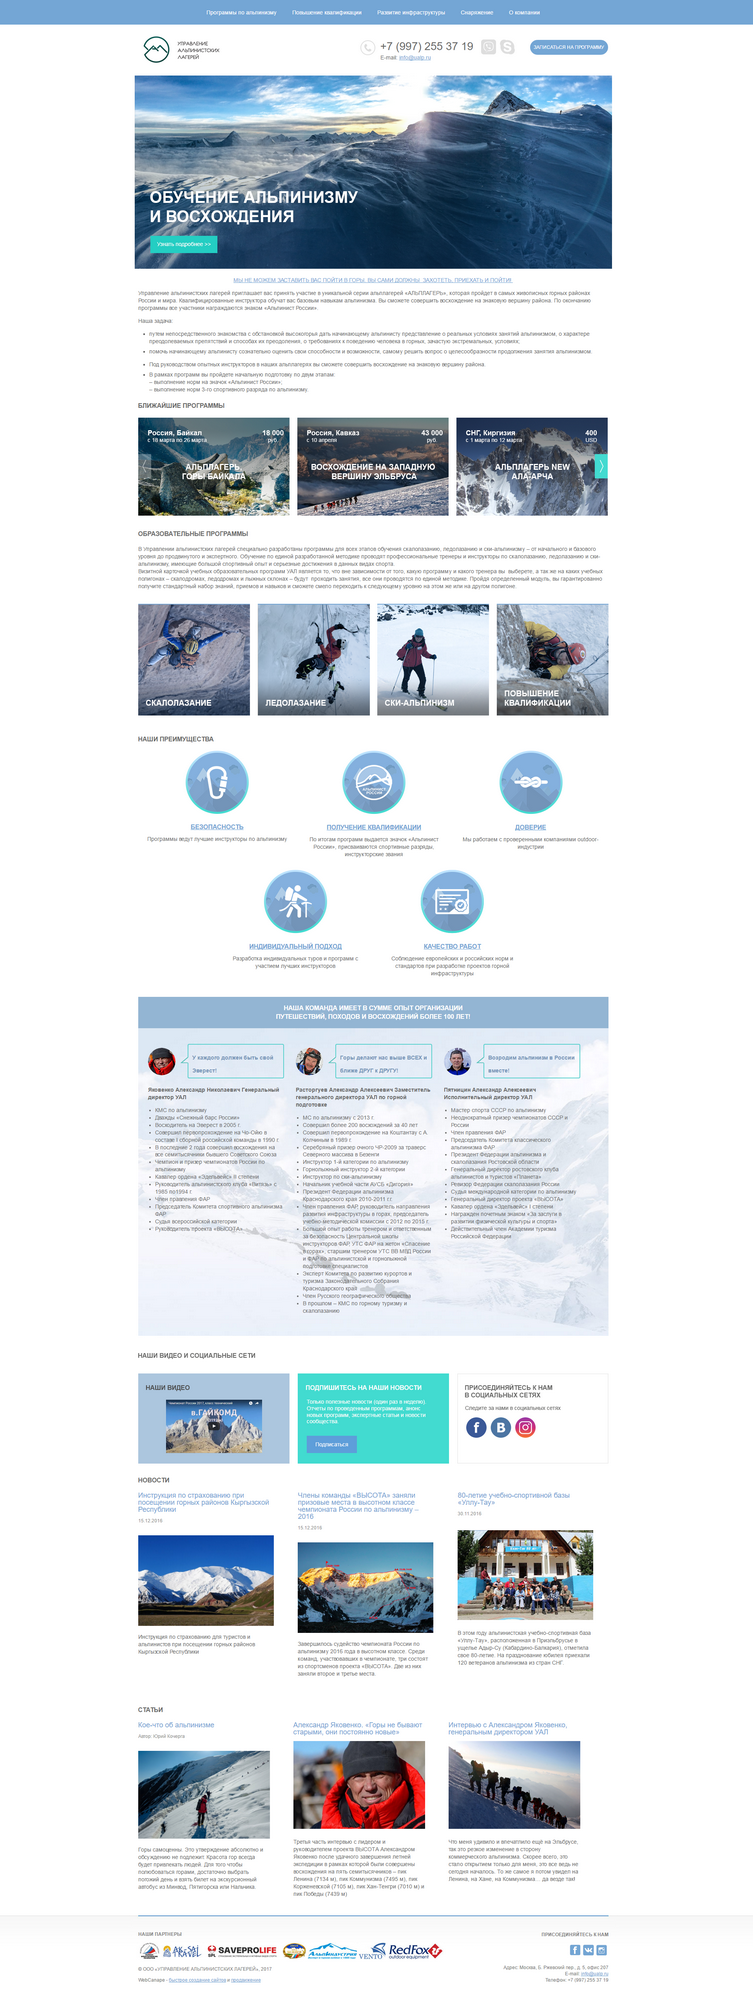 Разработка сайта для компании по управлению альпинистских лагерей